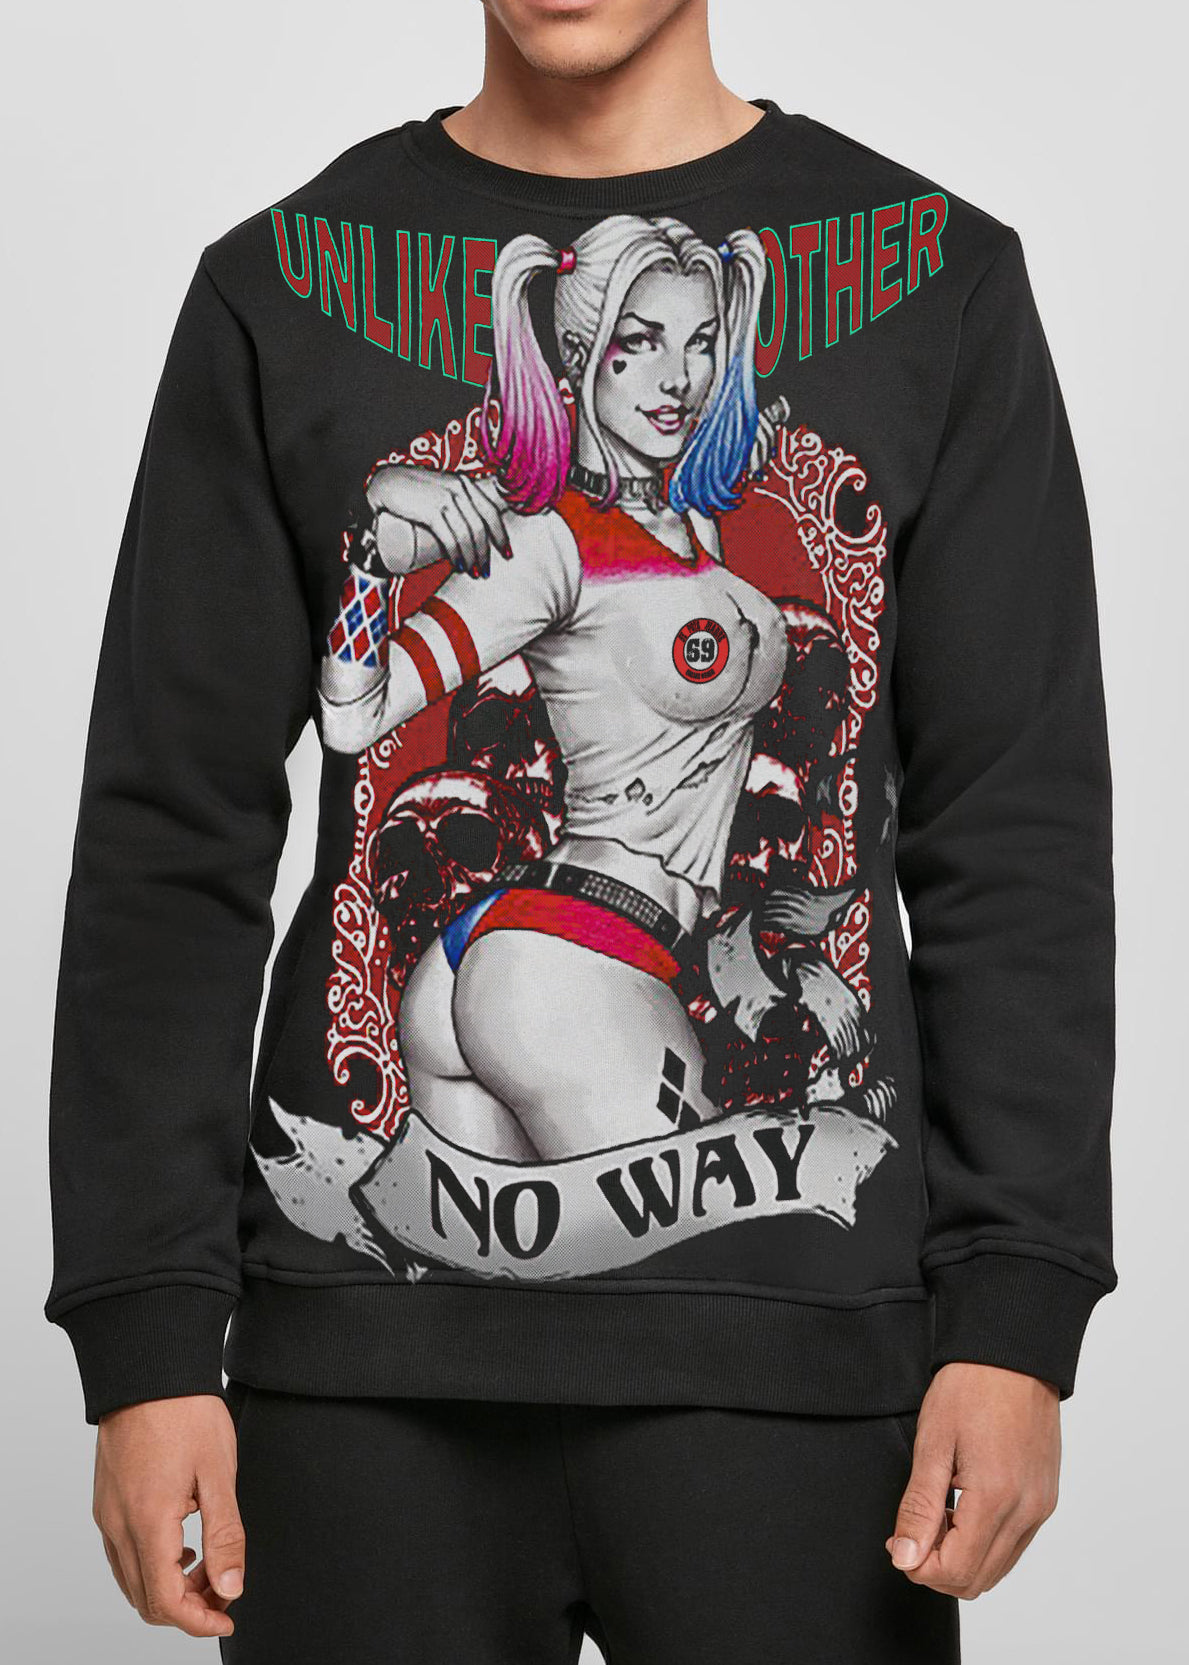 DPM 69 Men's sweatshirt design  Harleys Jokers Angel